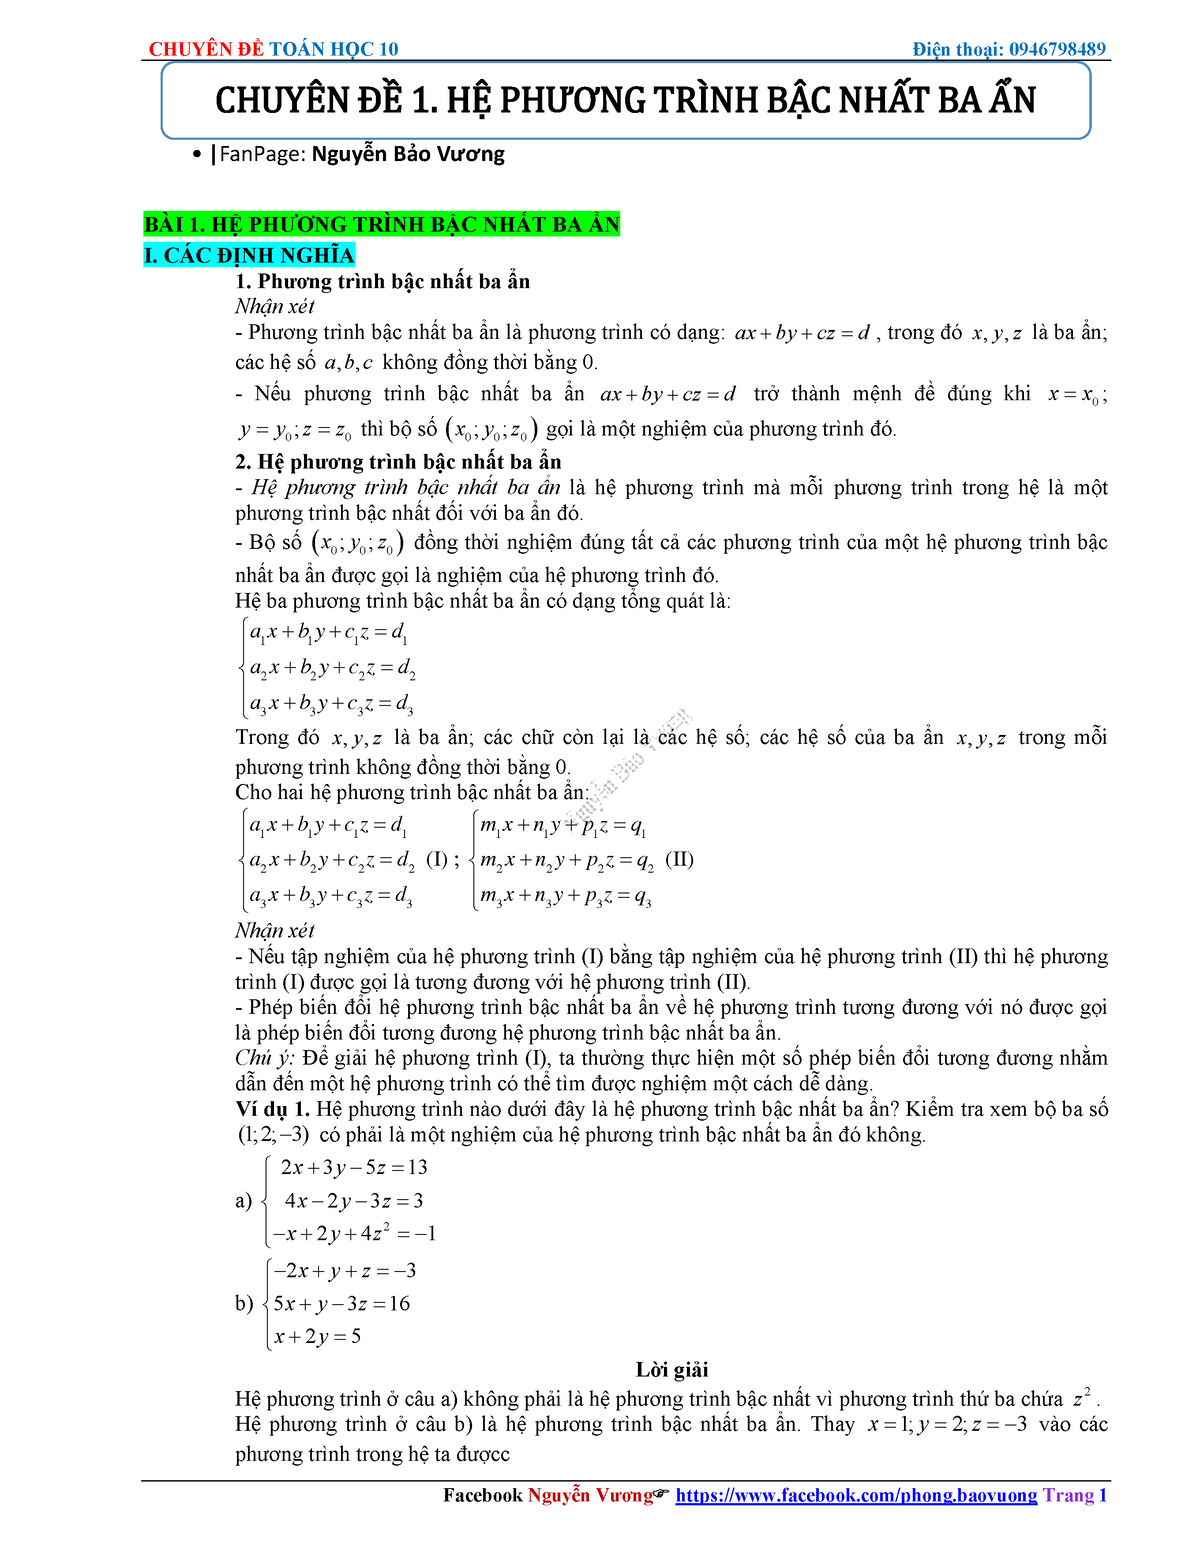 Tổng hợp bài tập hệ phương trình bậc nhất 3 an đầy đủ lời giải chi tiết